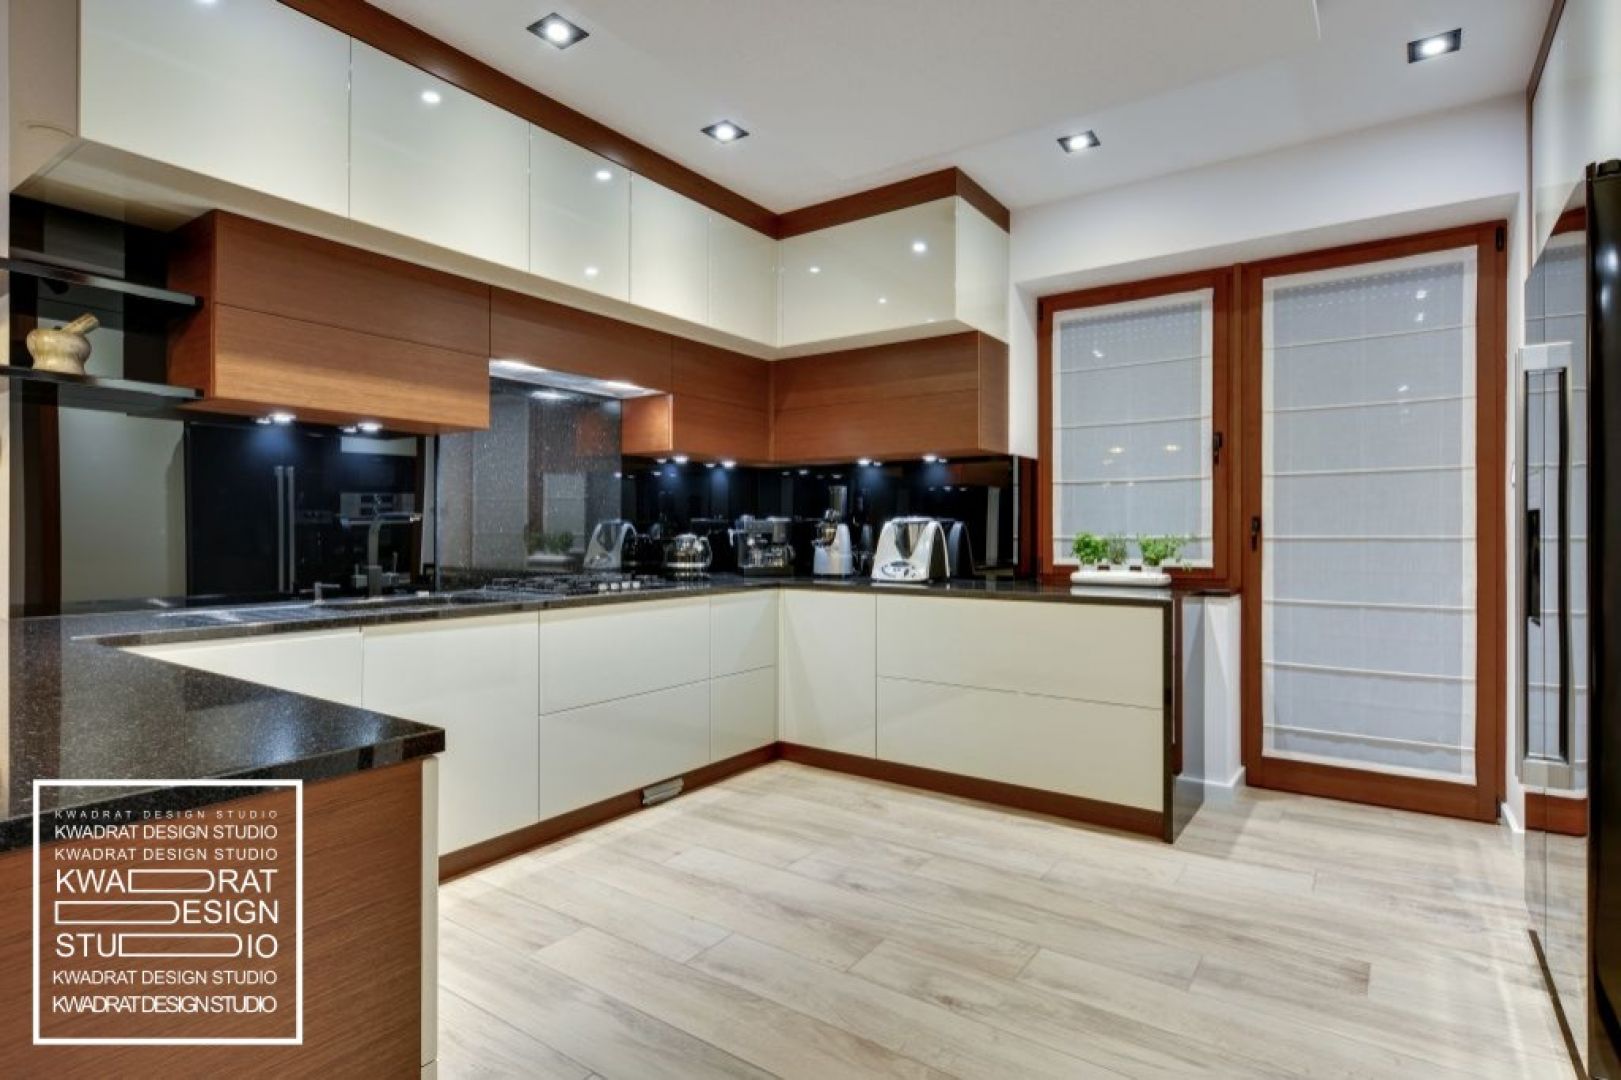 Prostota i funkcjonalność oraz połączenie bieli z kolorami drewna to główne wyznaczniki kuchni zaprojektowanej przez Kvadrat Design Studio. 